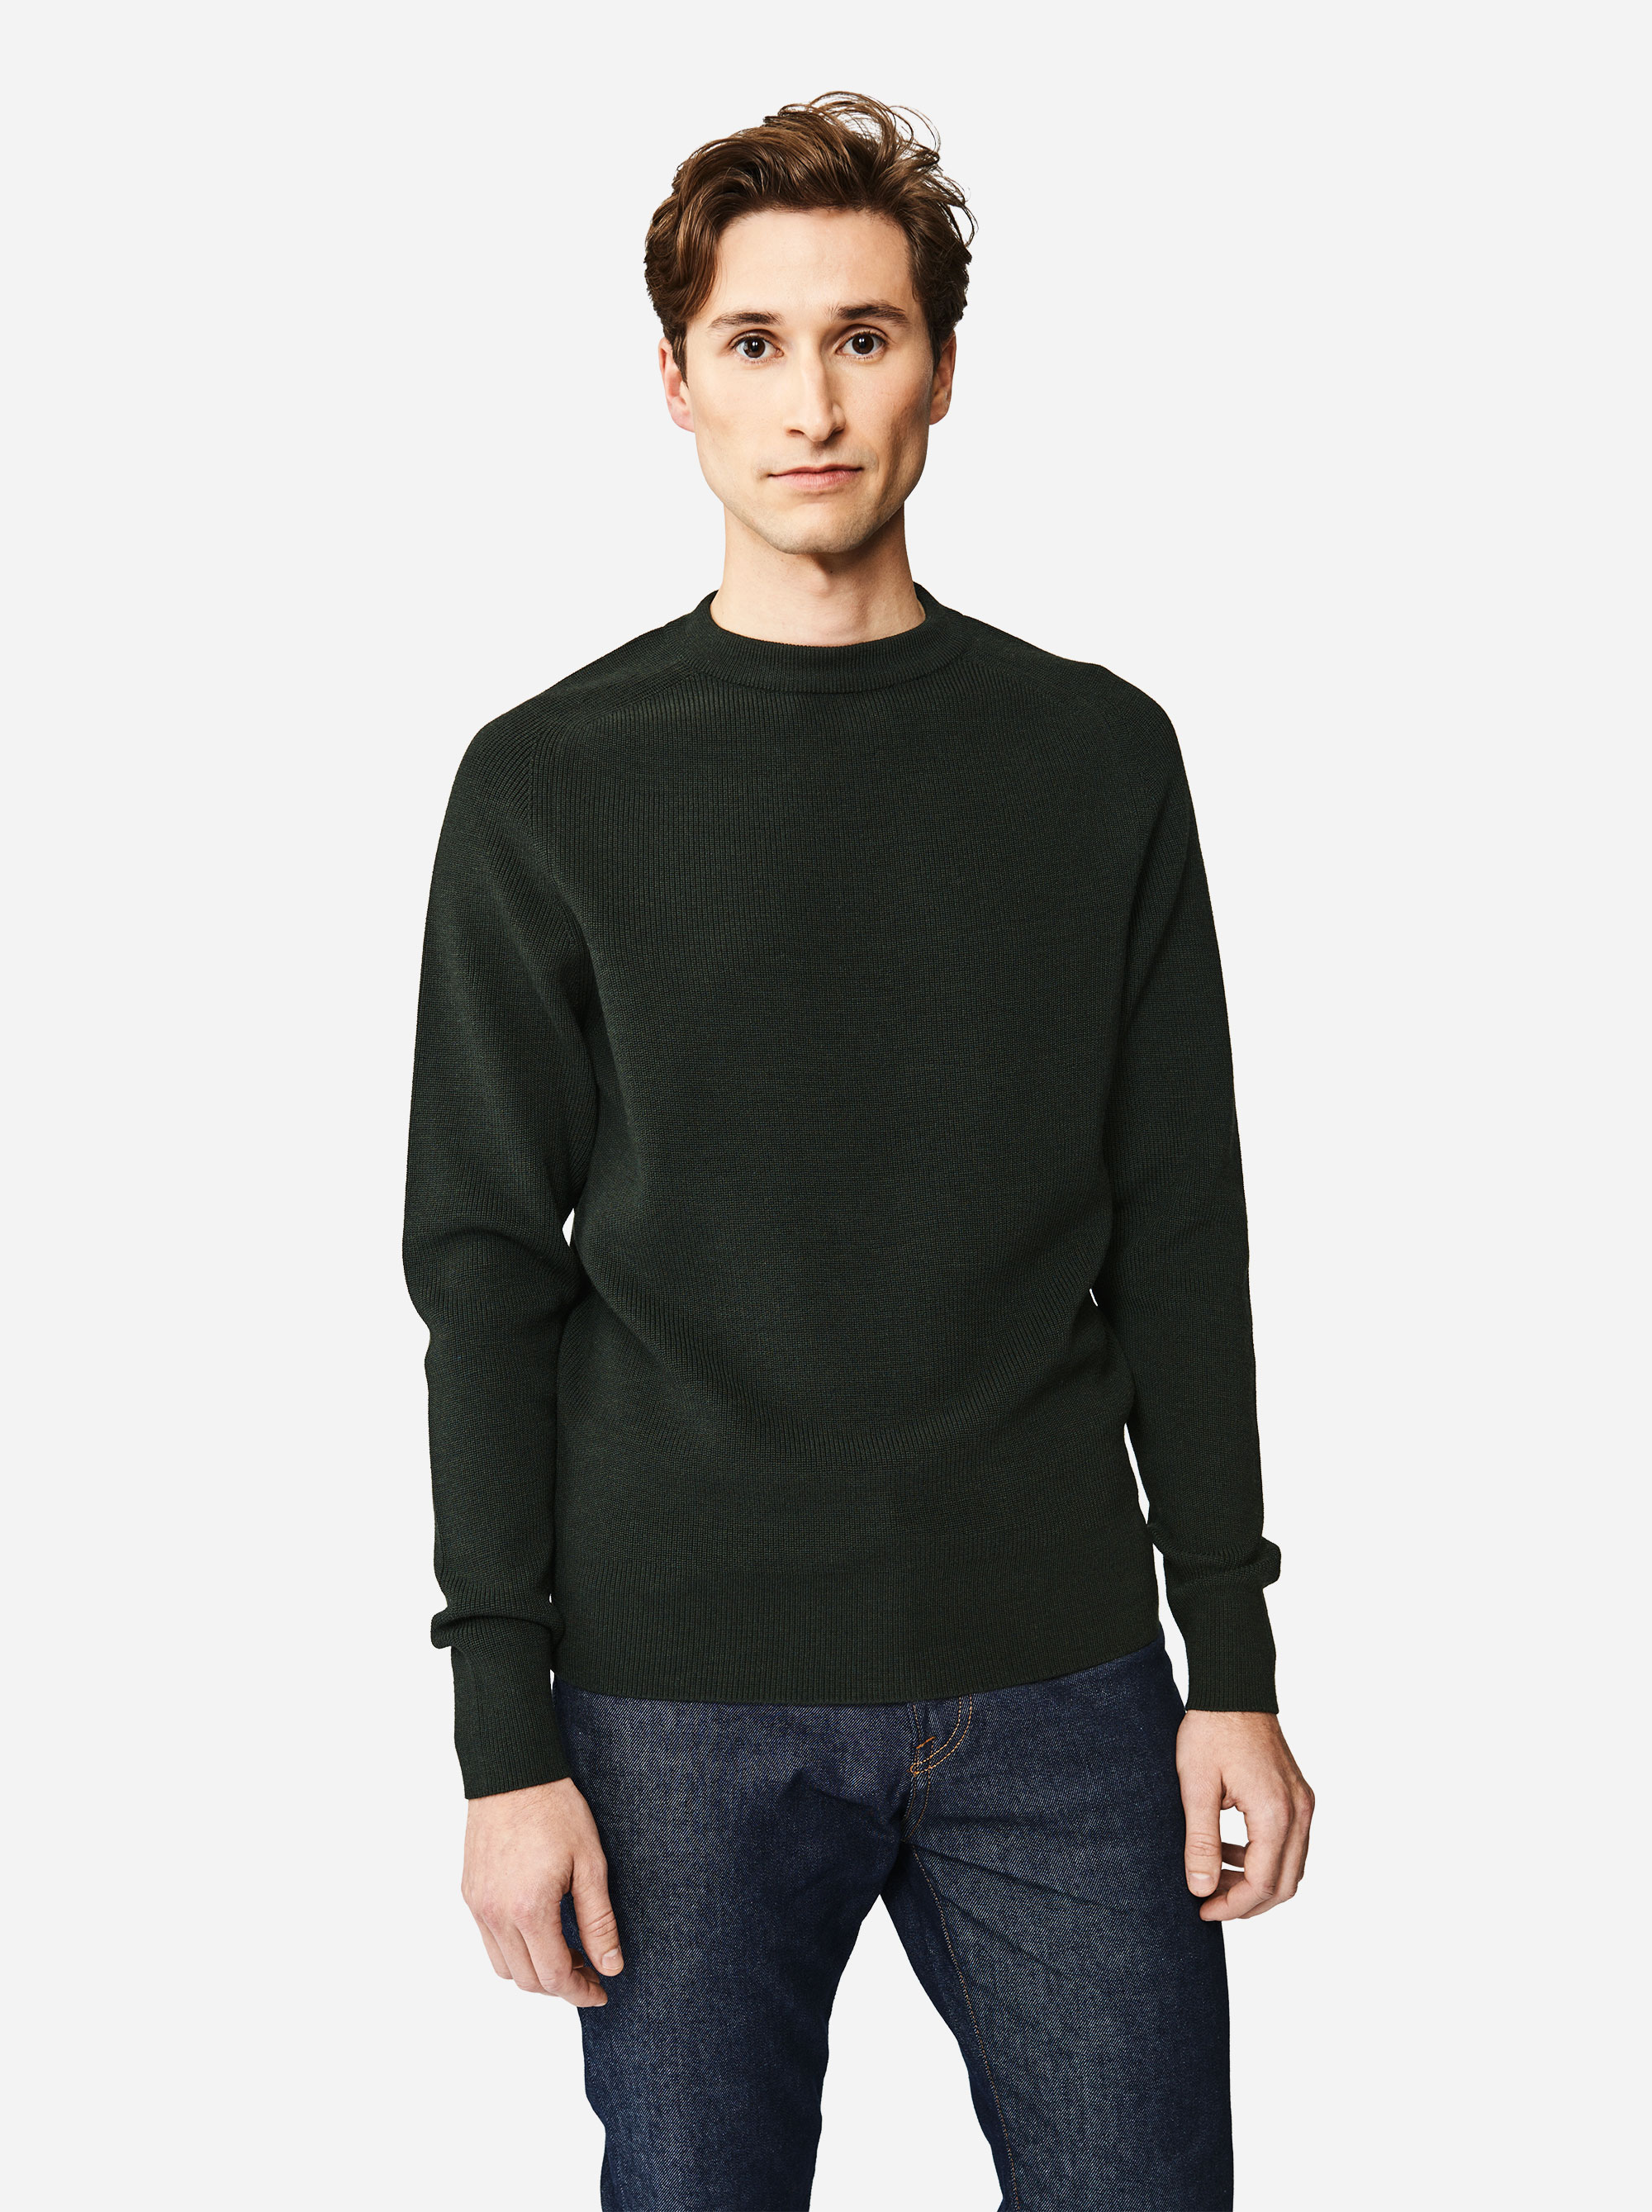 Teym - The Merino Sweater - Men - Green - 3